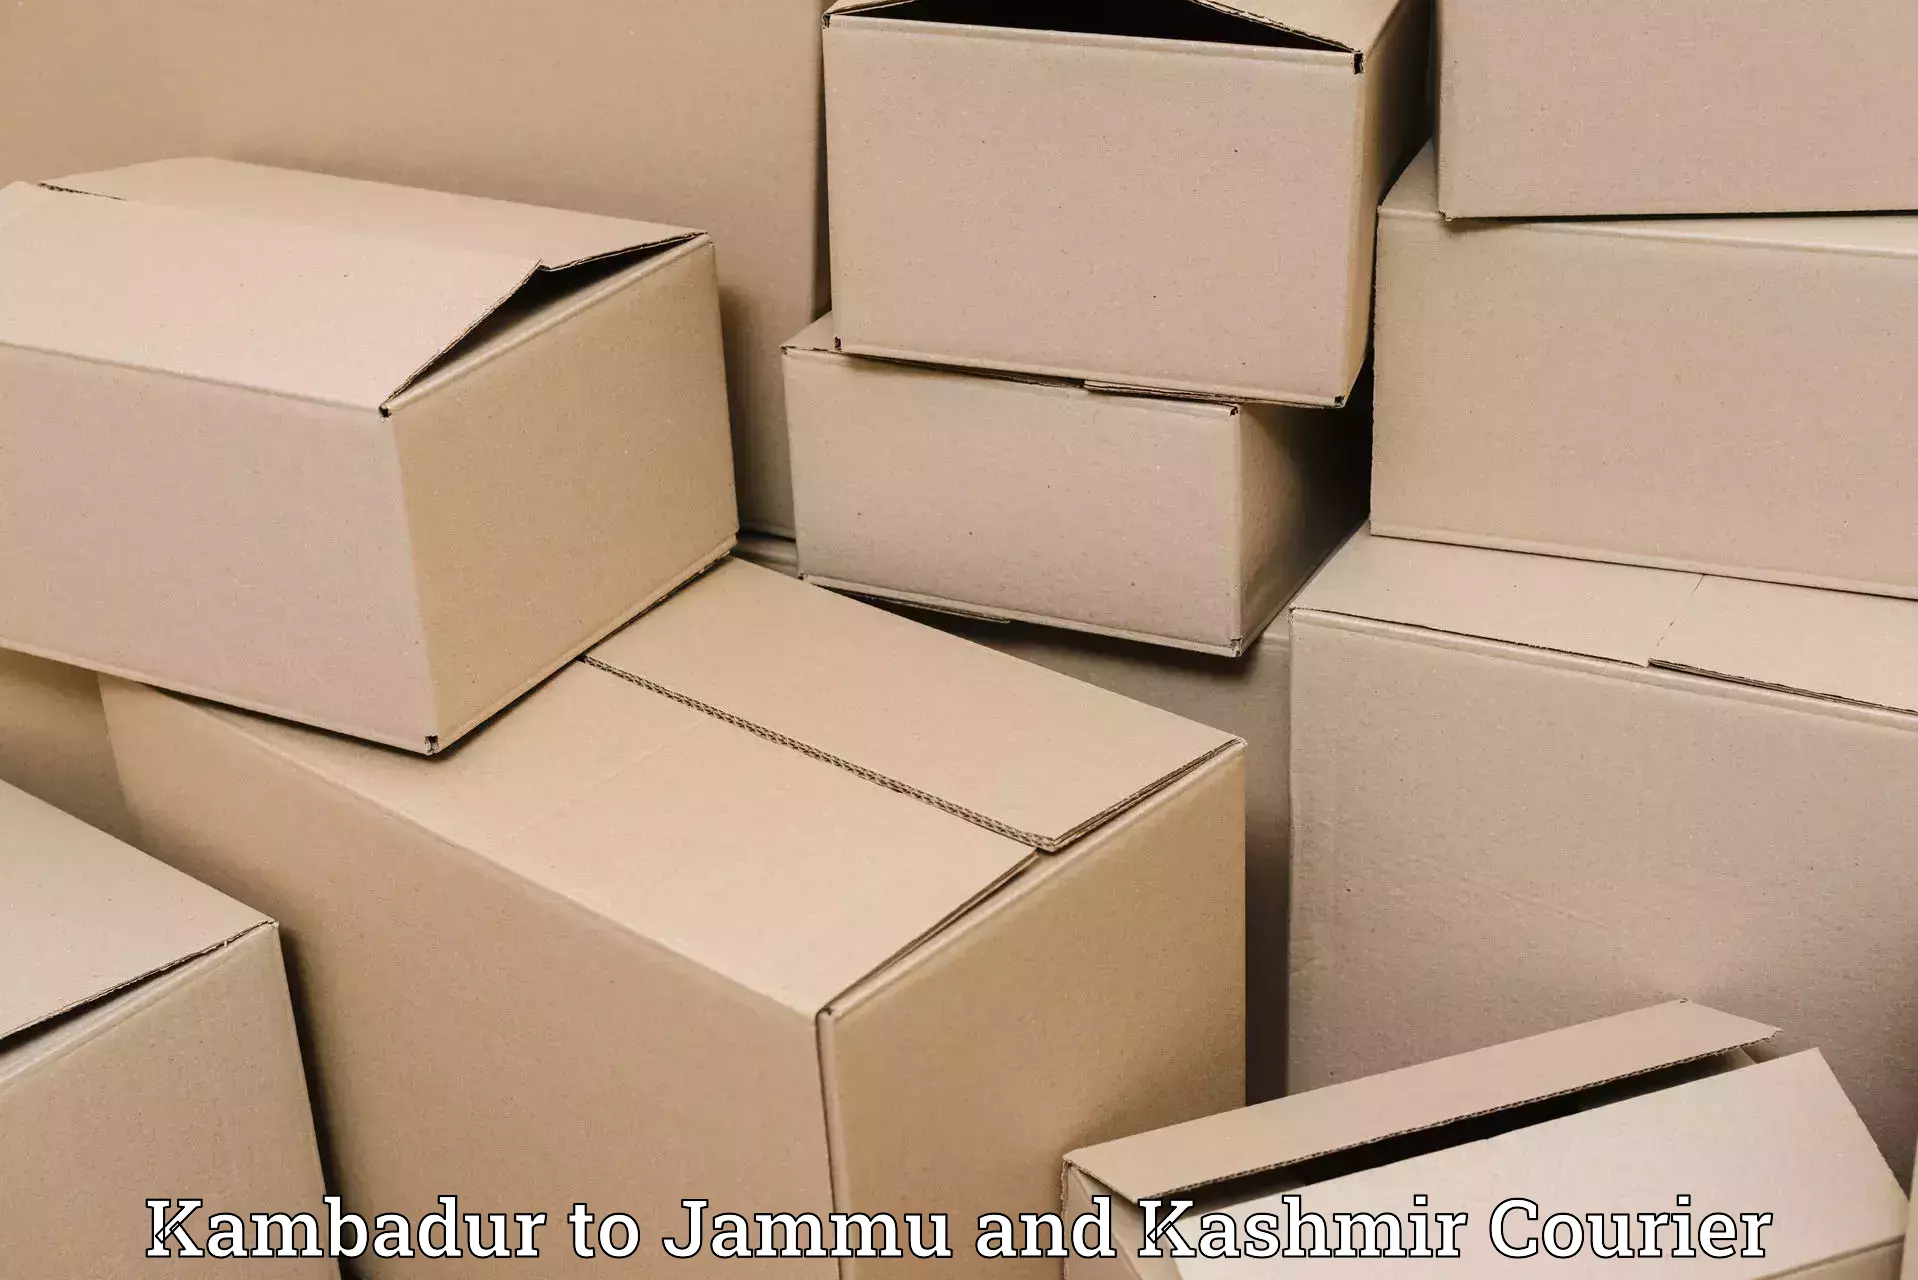 End-to-end delivery Kambadur to Srinagar Kashmir